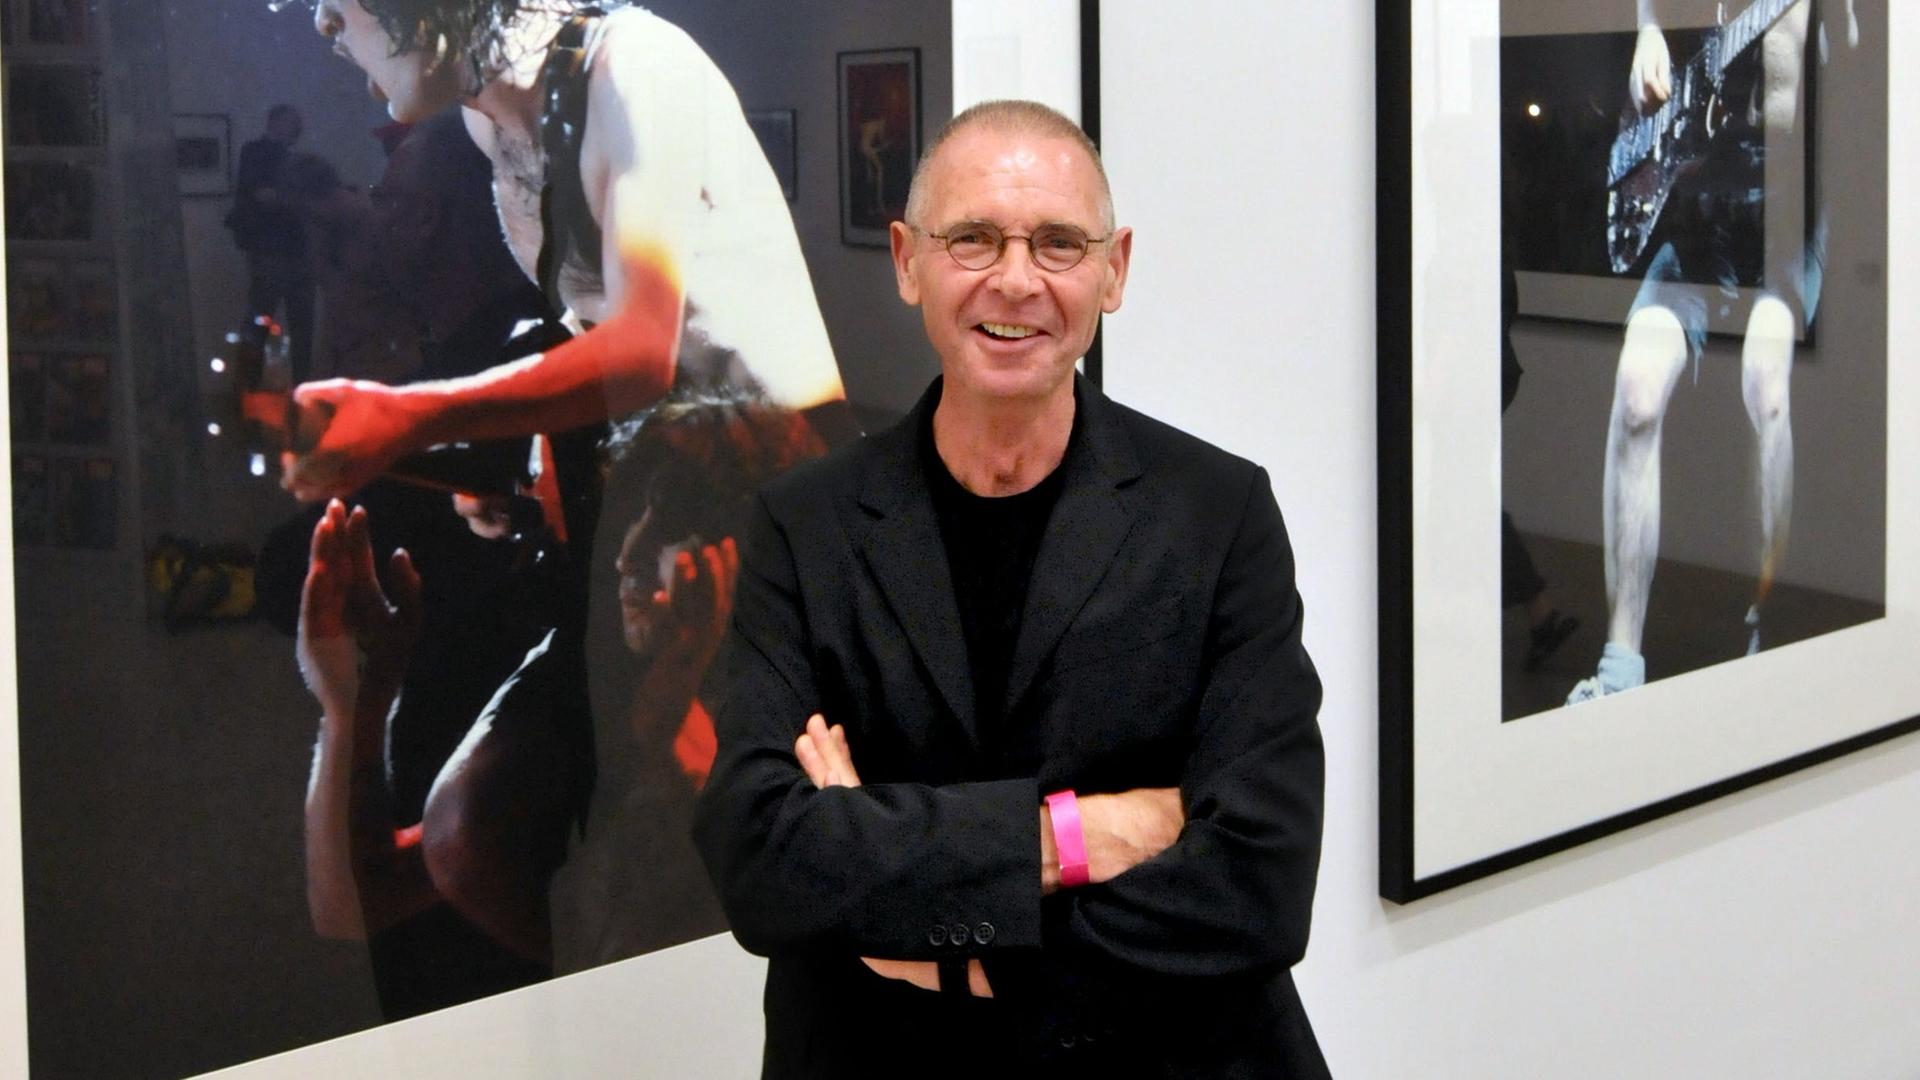 Der Schweizer Fotograf Hannes Schmid trägt eine Brille und lächelt leicht schief. Hinter ihm sind Fotos von einem Rockgitarristen mit freiem Oberkörper zu sehen.